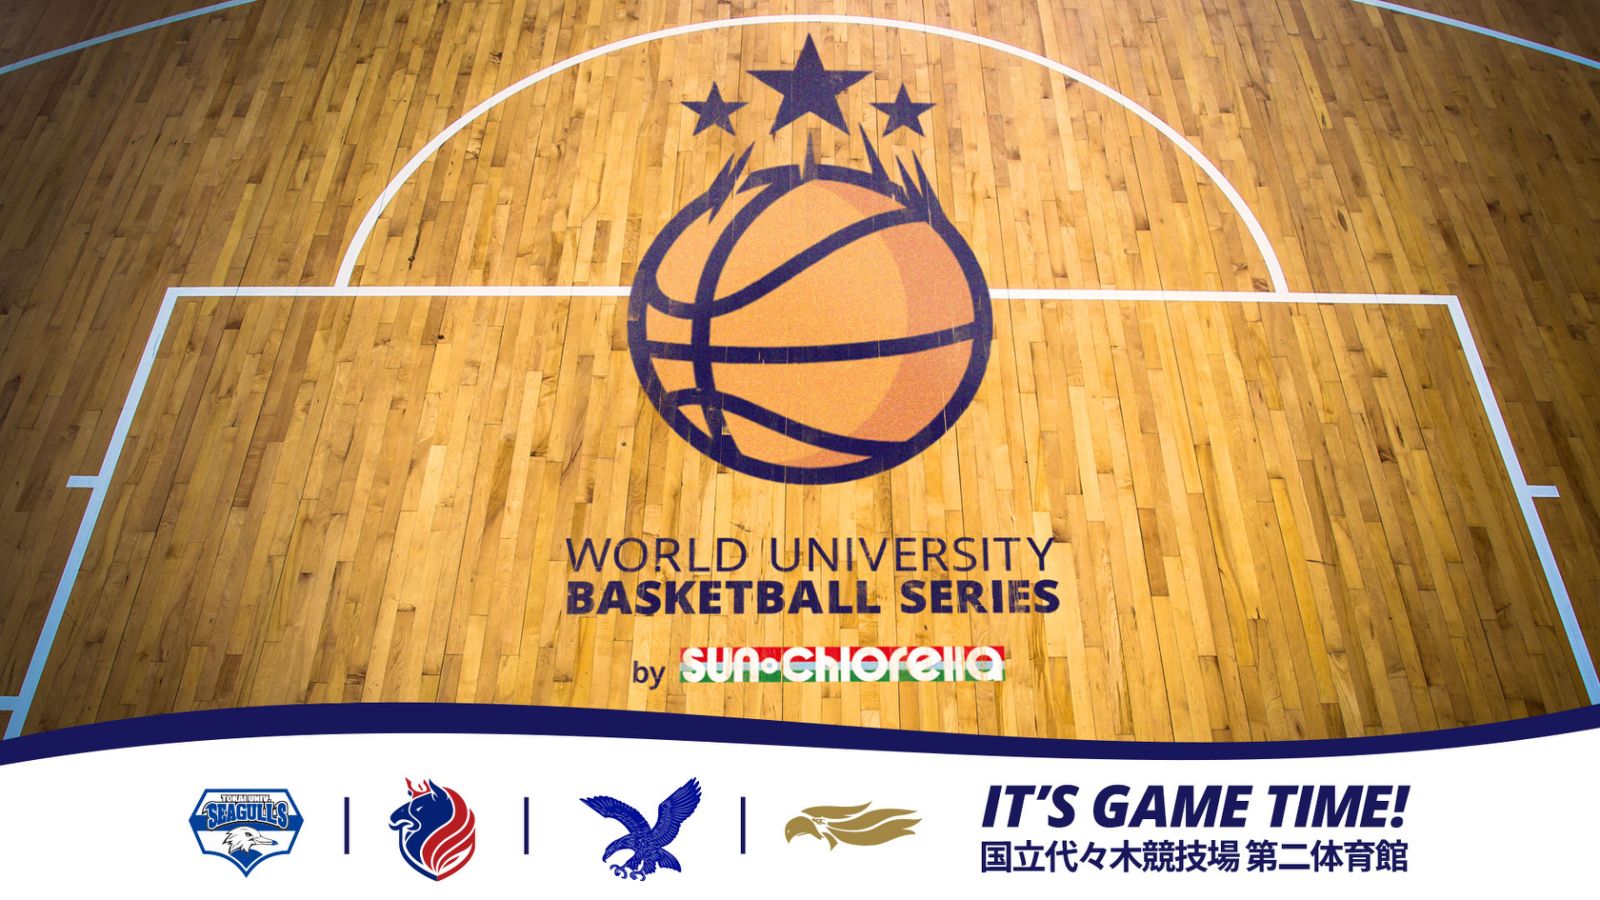 樂天集團與全日本籃球聯盟合辦 – 世界大學籃球賽WUBS